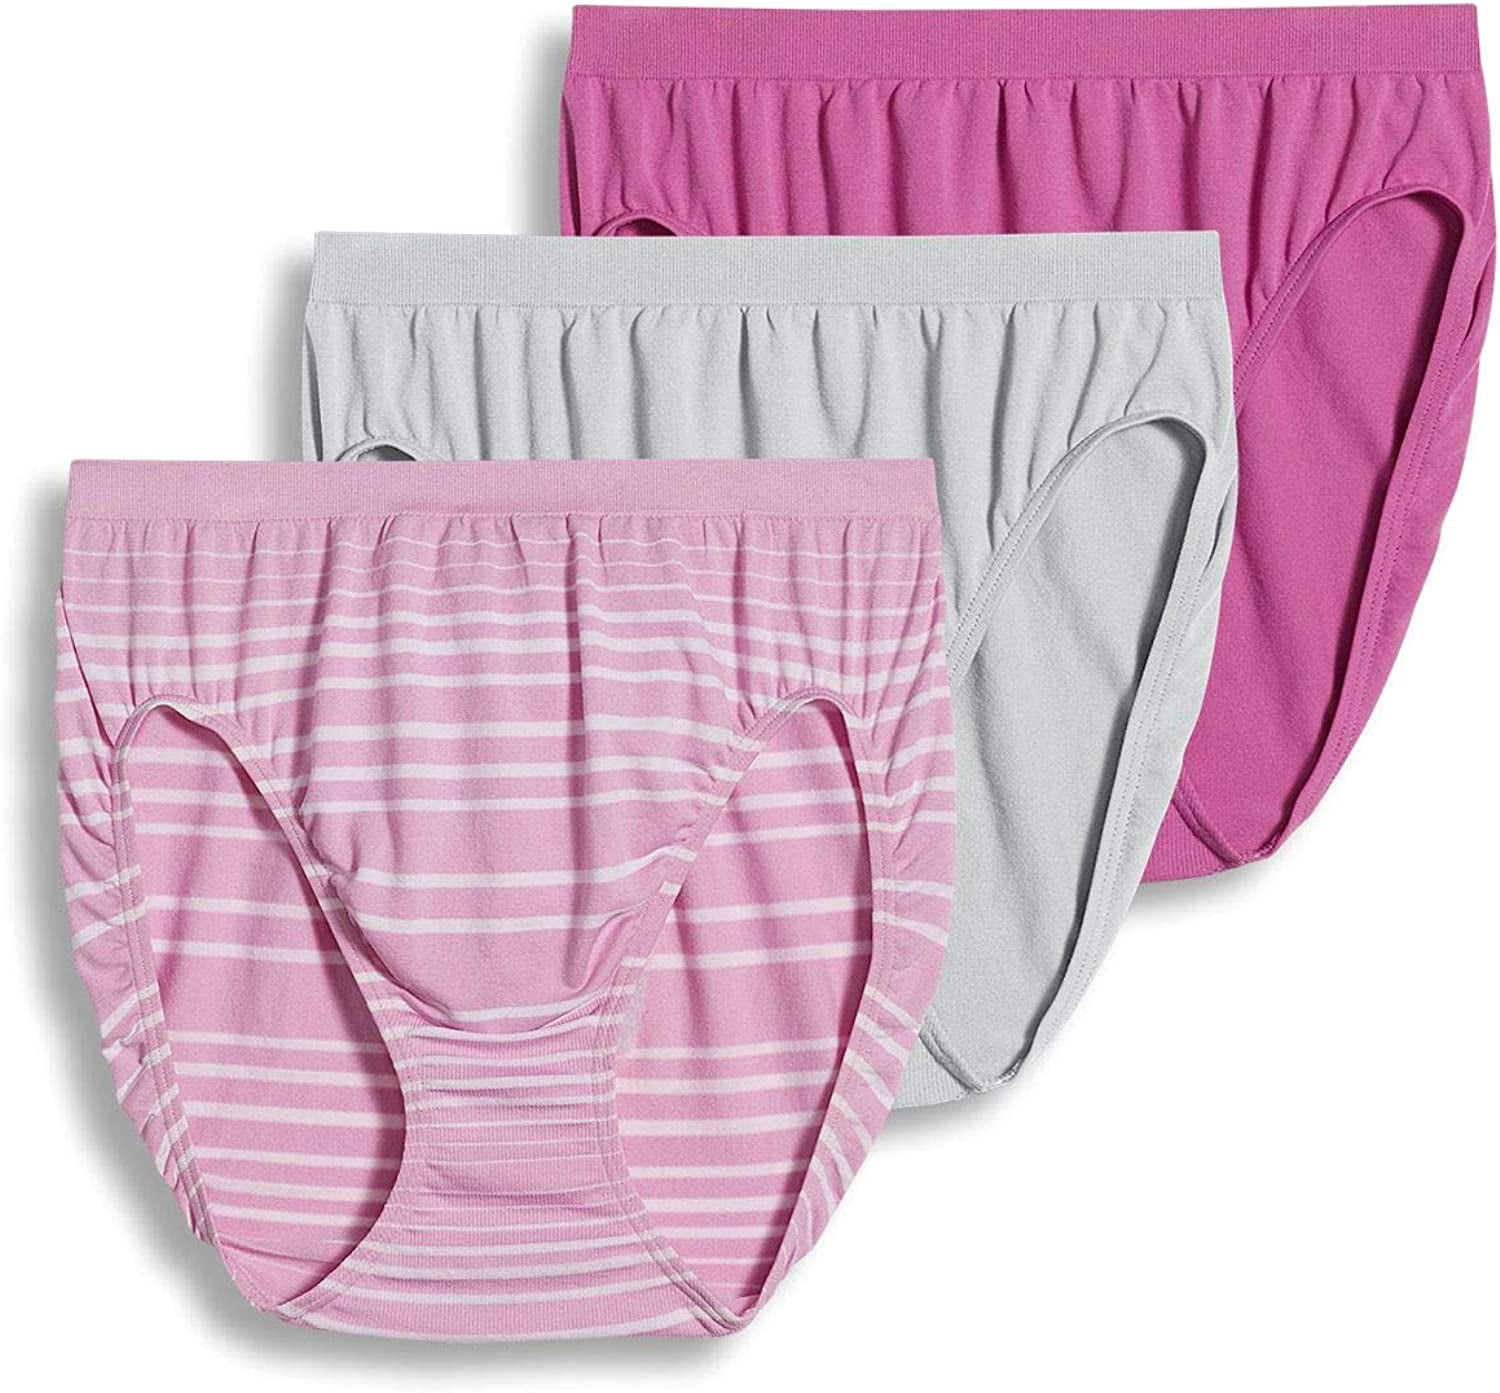 Jockey Women's Underwear Comfies Microfiber French Cut - 3 Pack ...